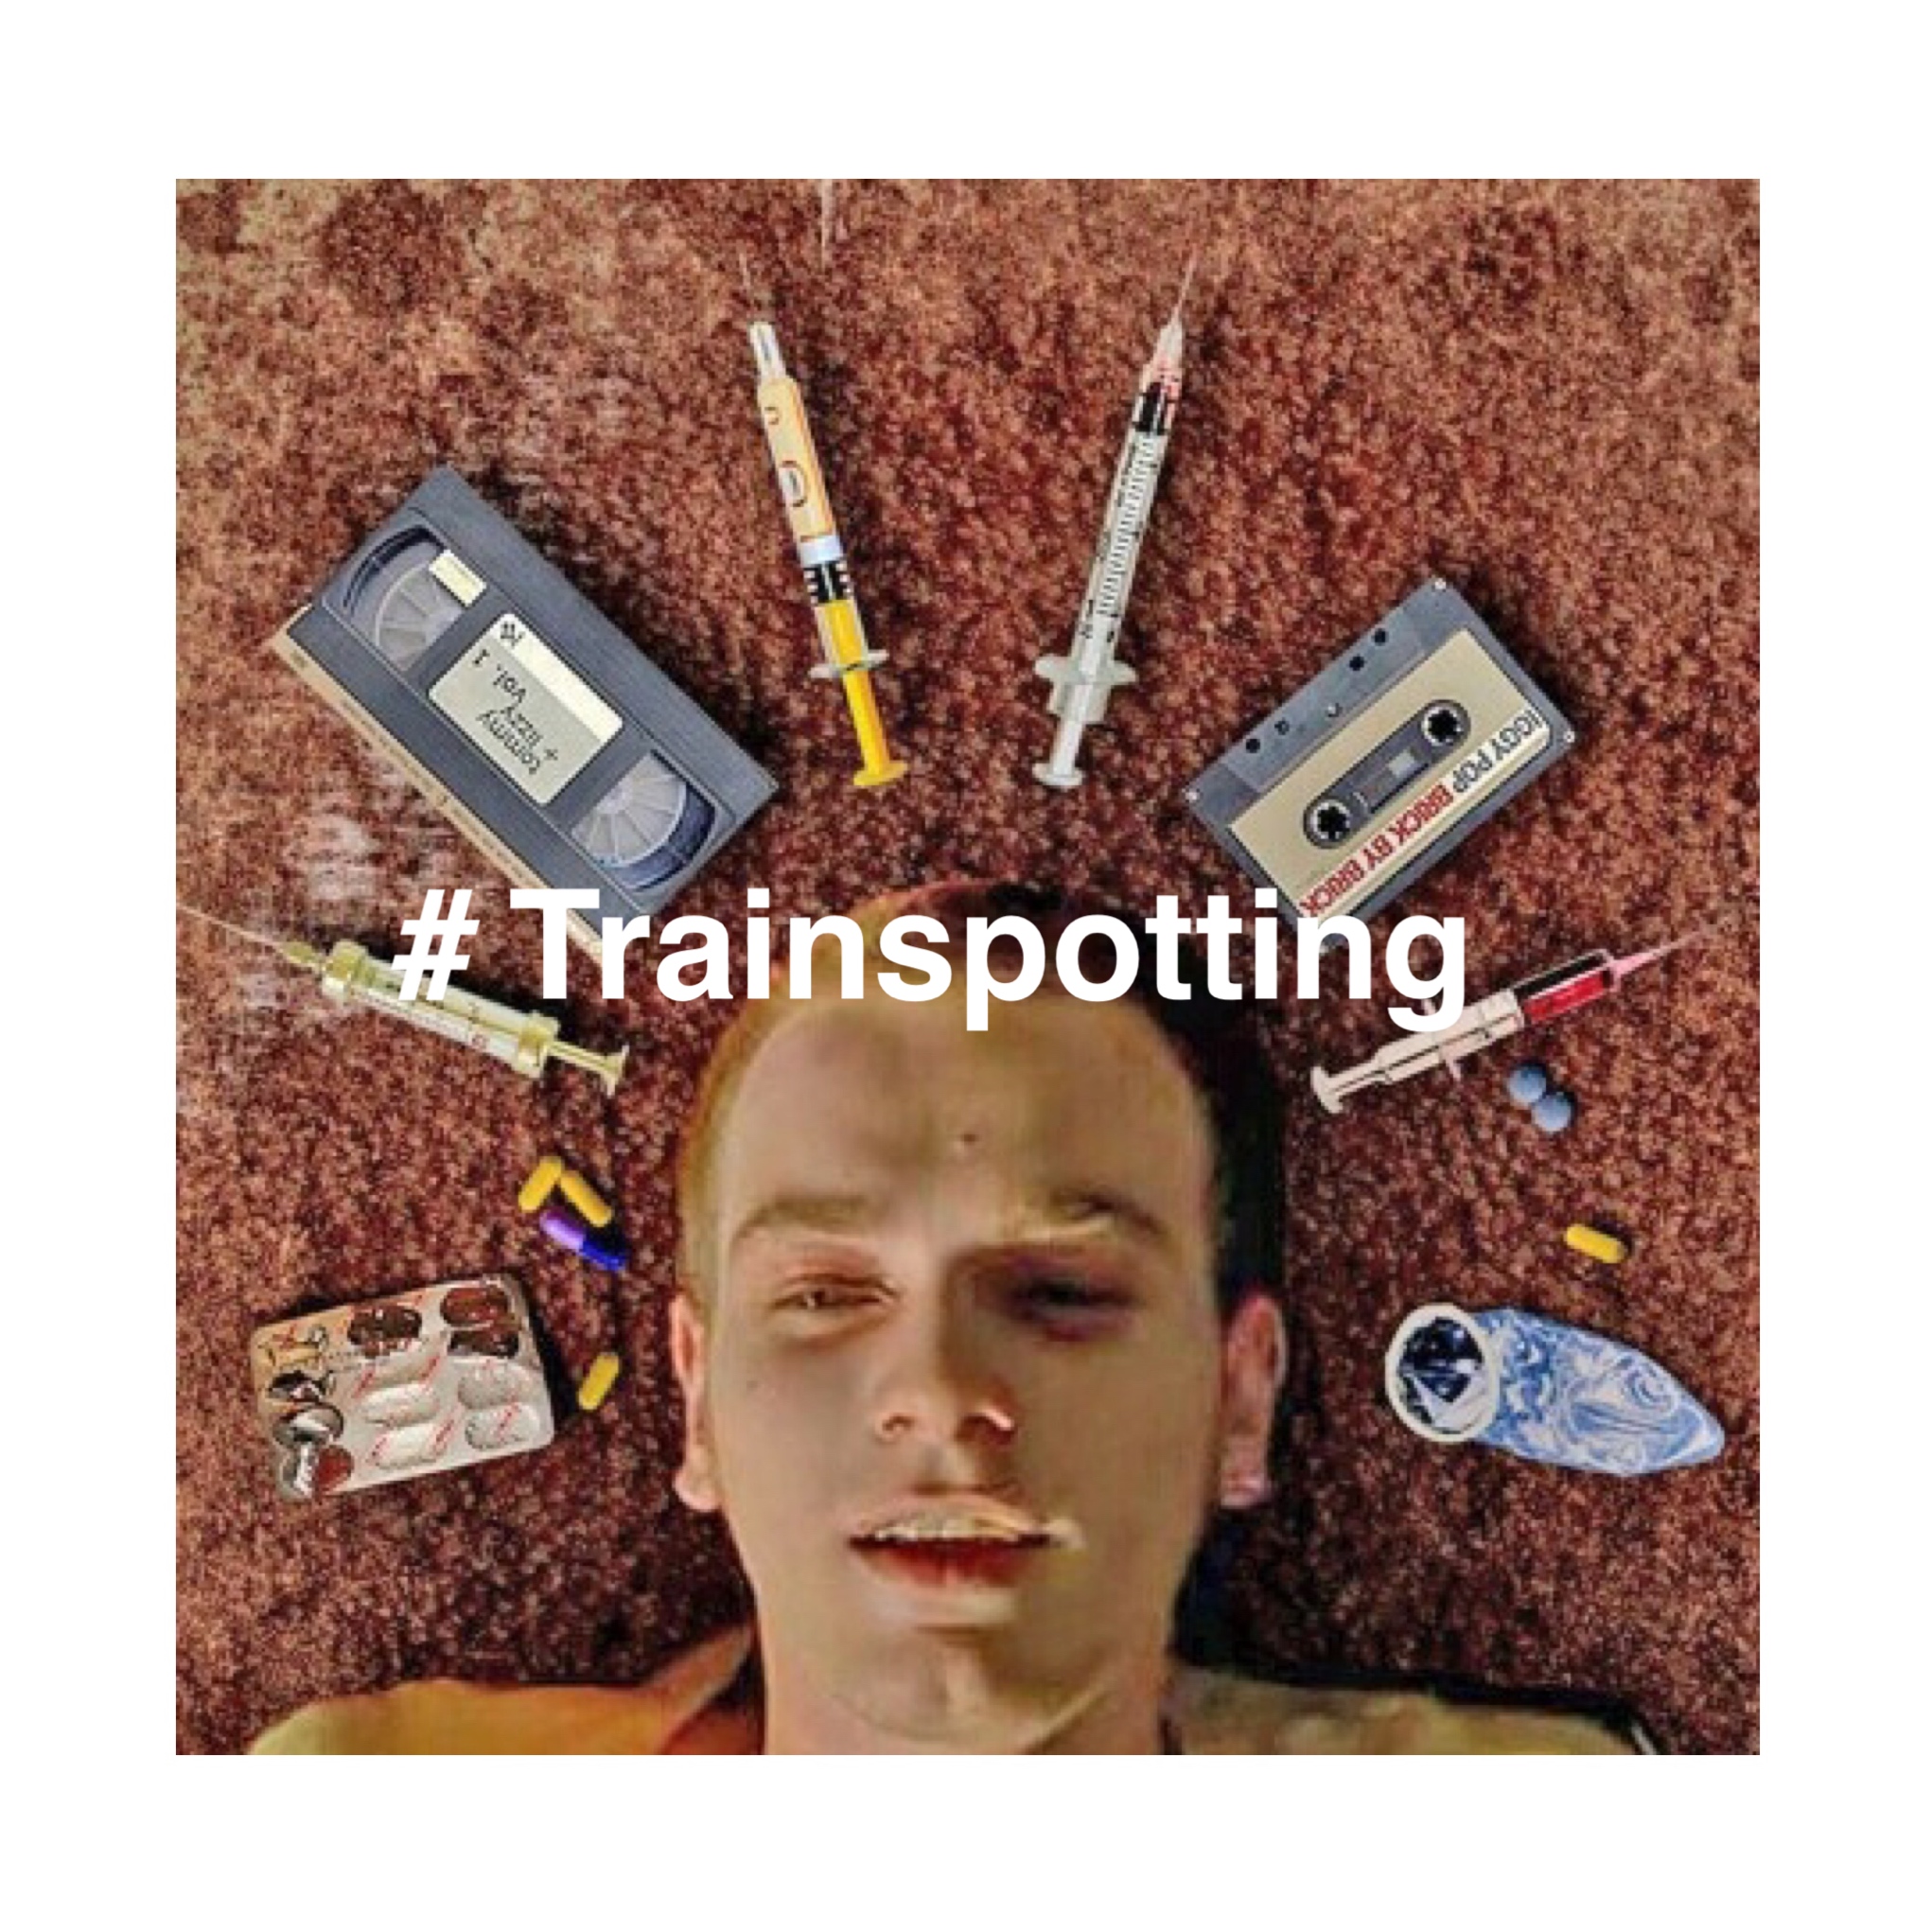 人生を選べ ビタミンcが違法だったらやってた Trainspotting はなぜ今も人を魅了する ミリの映画から学ぼう T2 Nylonブログ ファッション ビューティ カルチャー情報